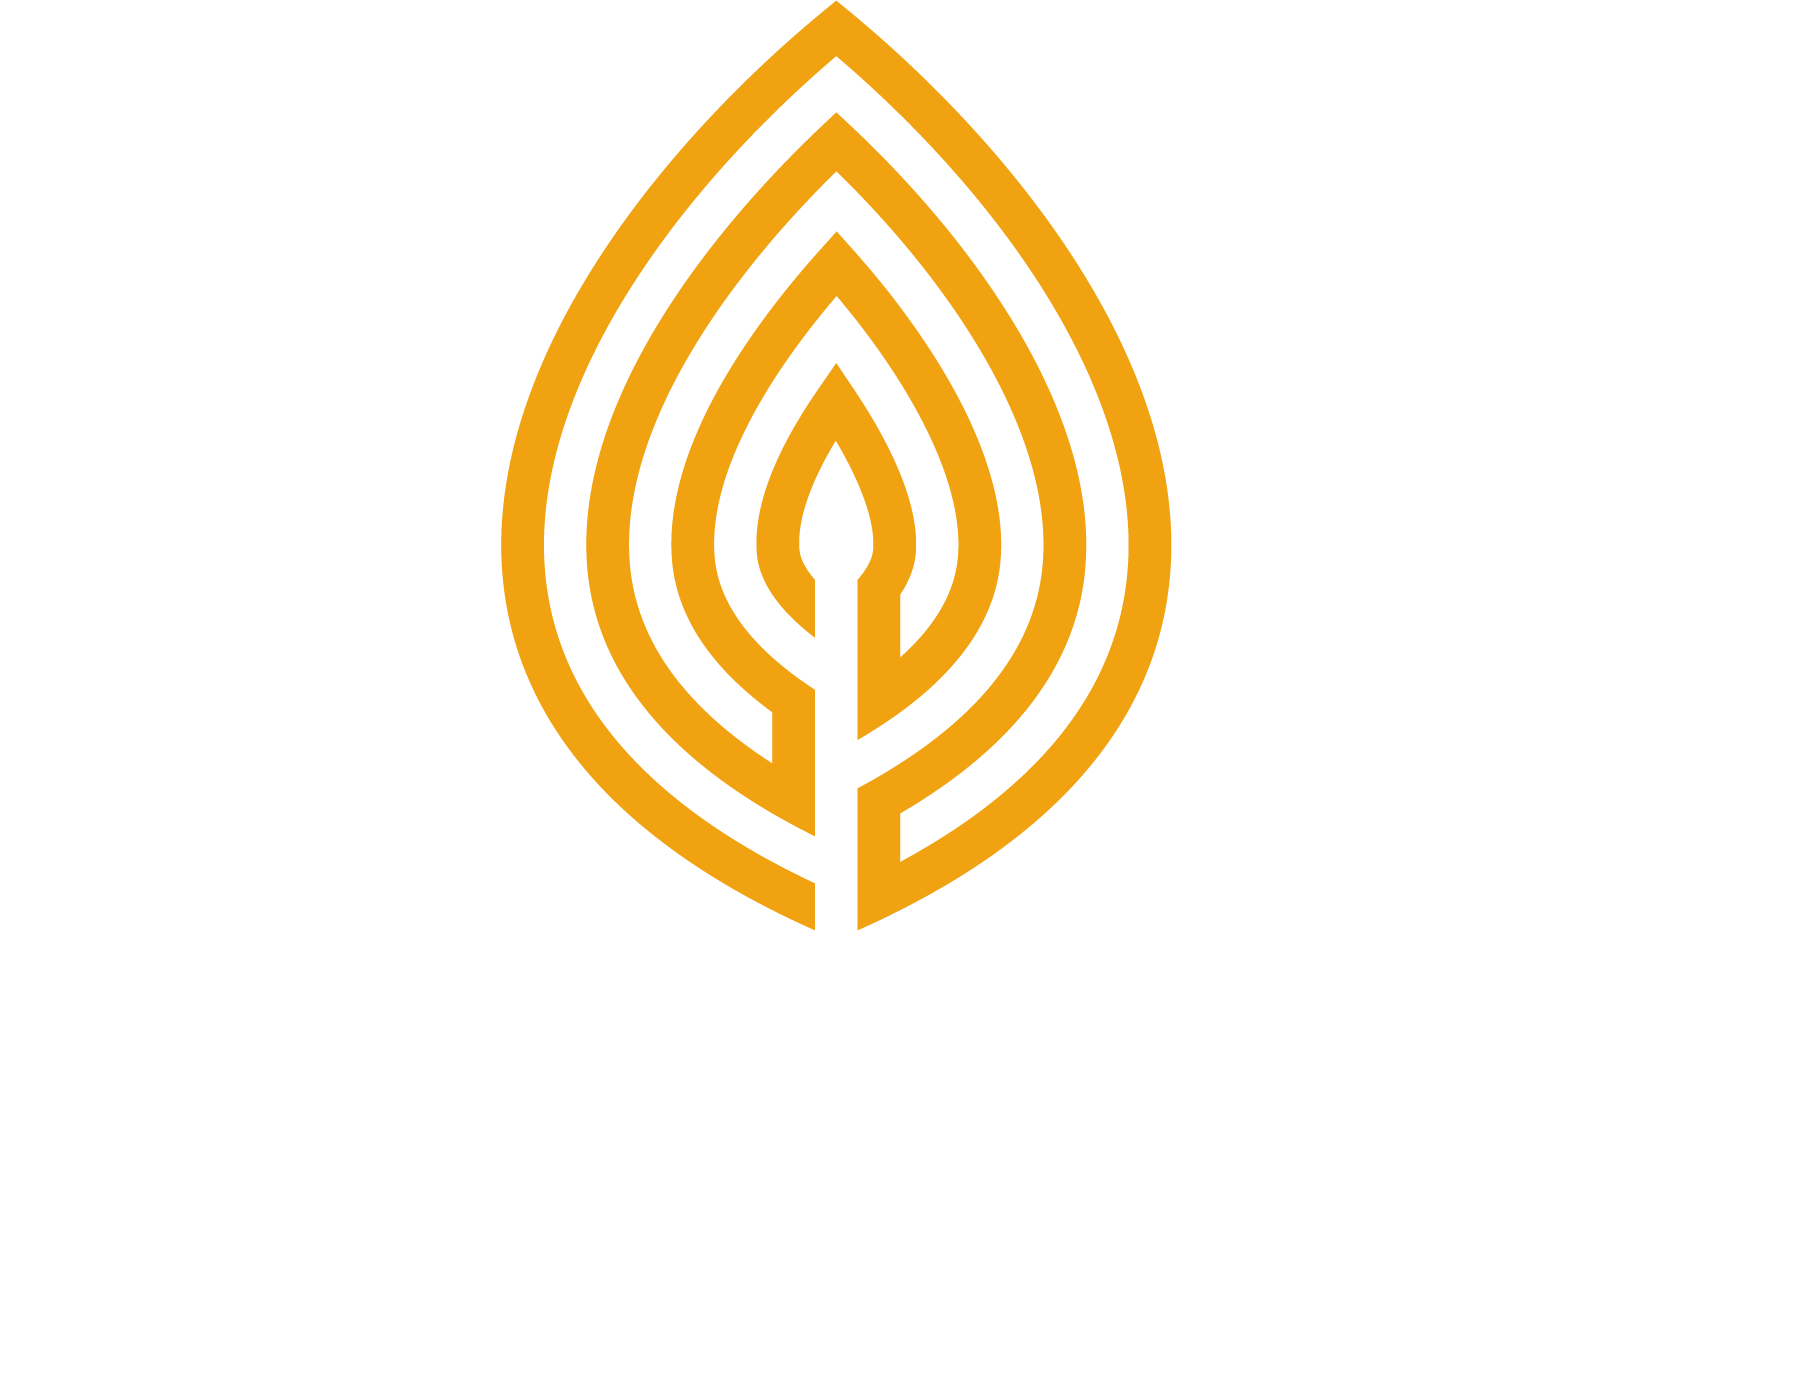 AgCor logo with white text